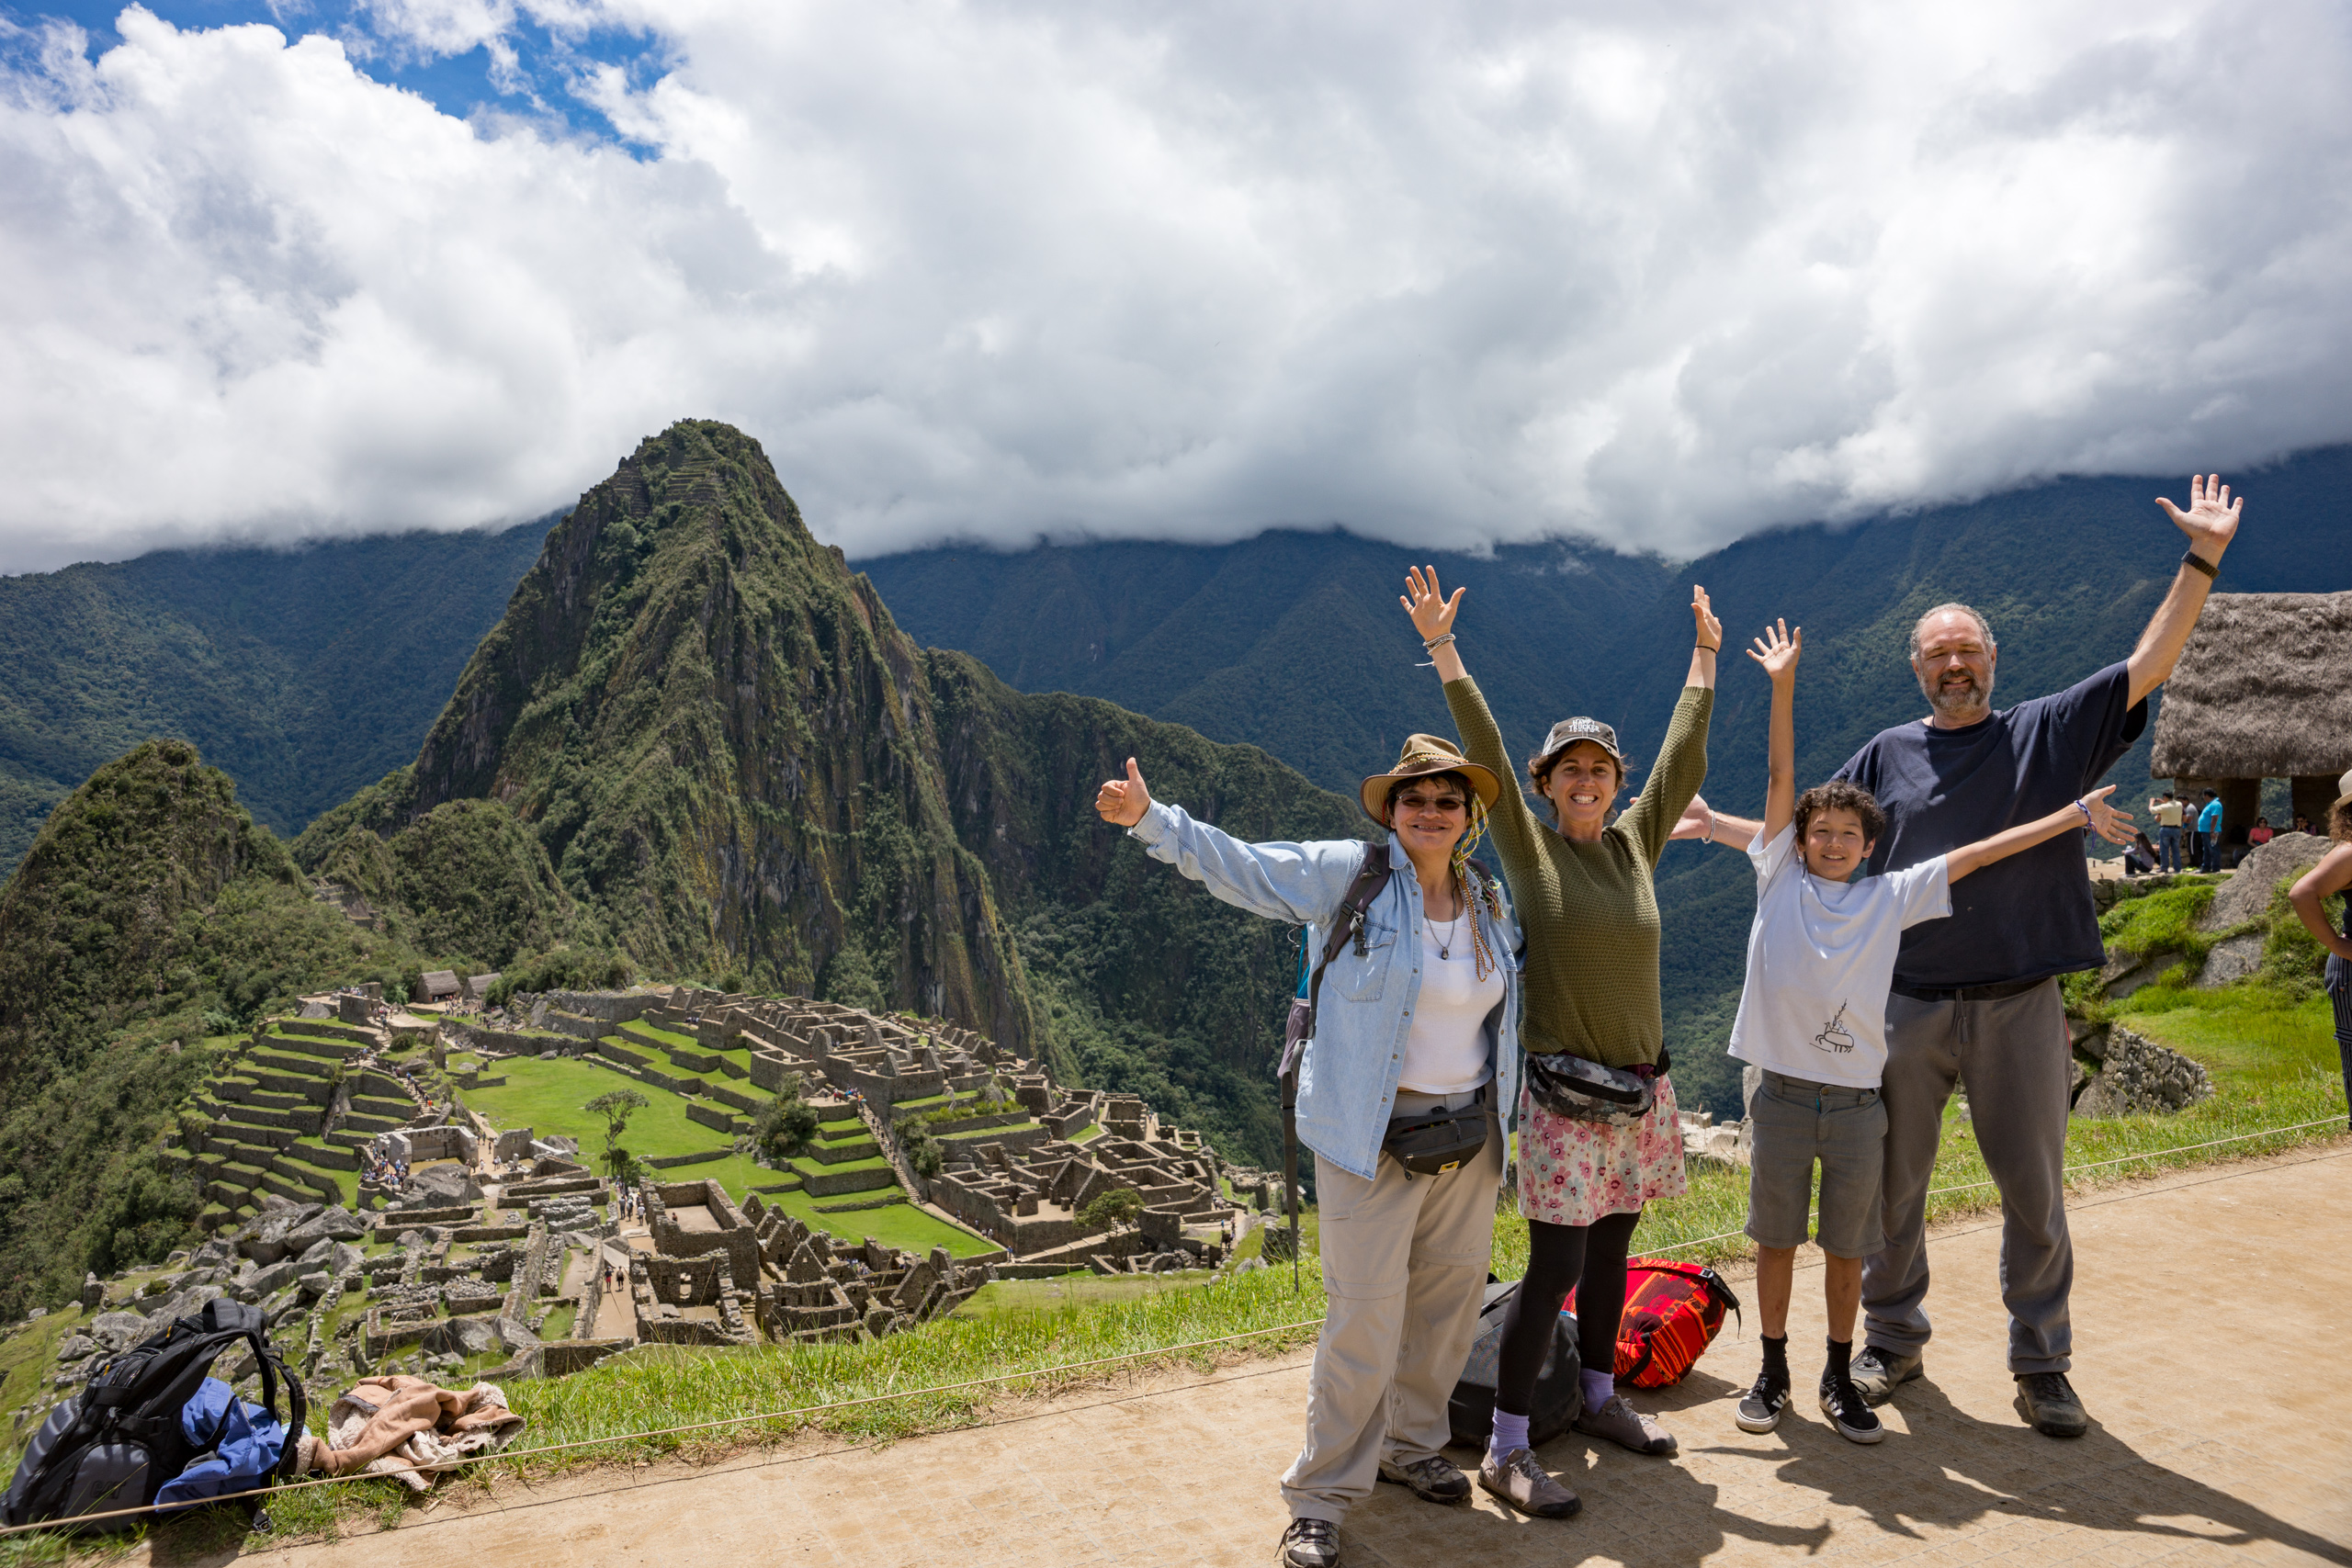 Hppiness at Machu Picchu